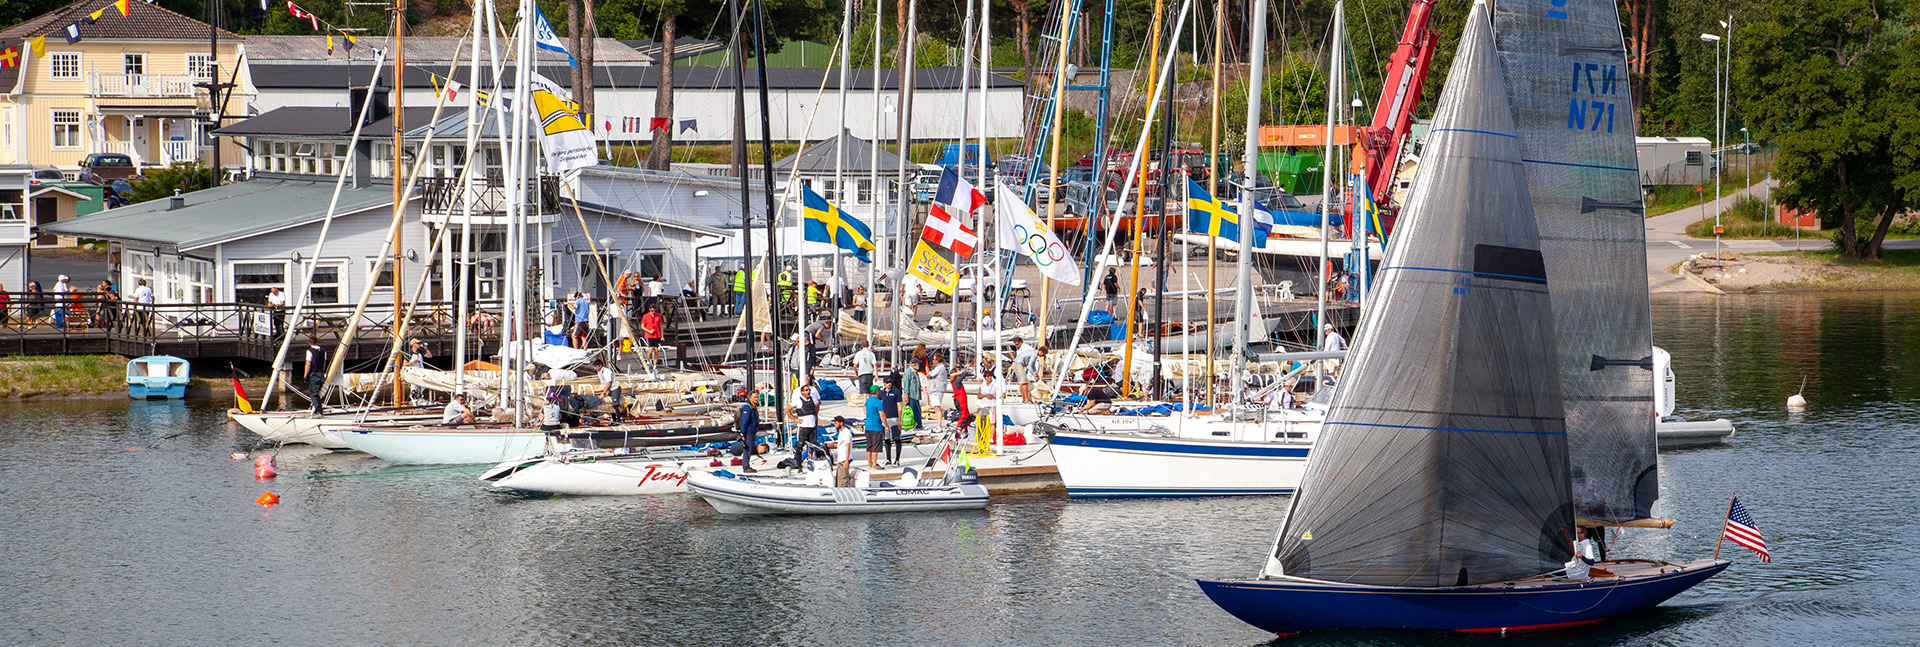 Klubbhus och båtar Årets Båtklubb 2020 Nynäshamn